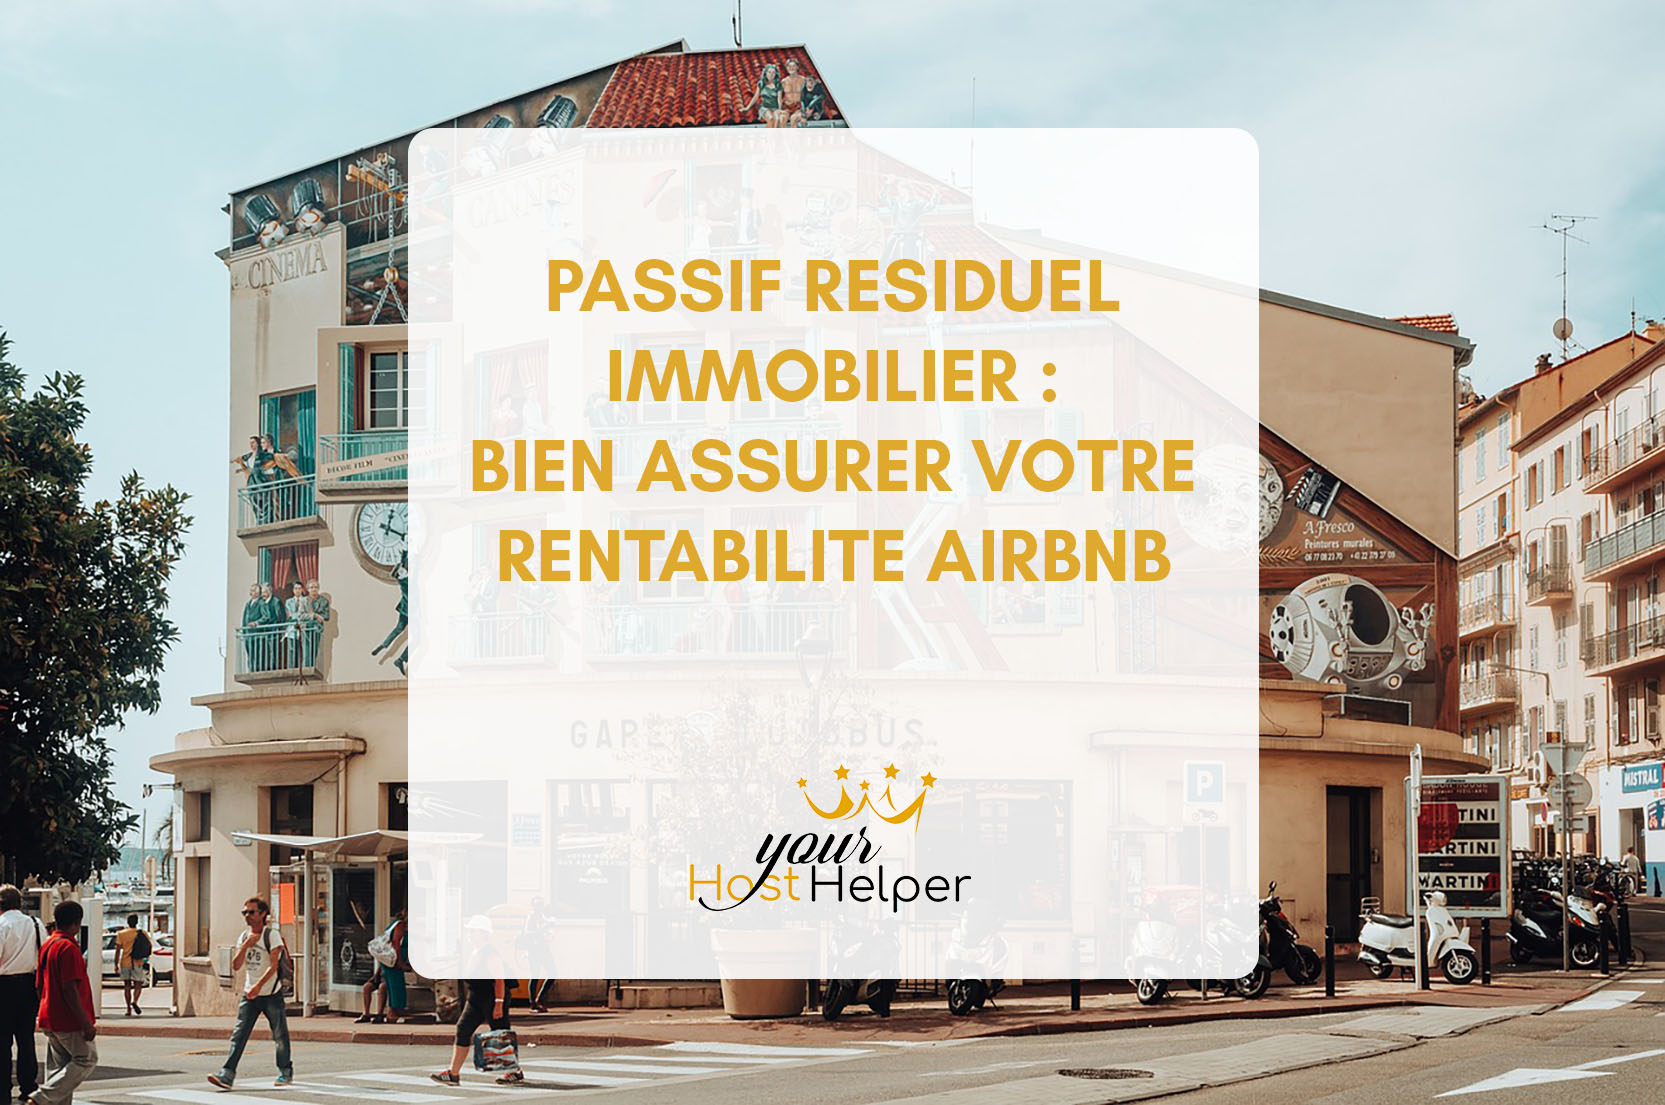 Подробнее о статье Остаточные обязательства по недвижимости: обеспечение прибыльности Airbnb с помощью консьерж-службы в Каннах